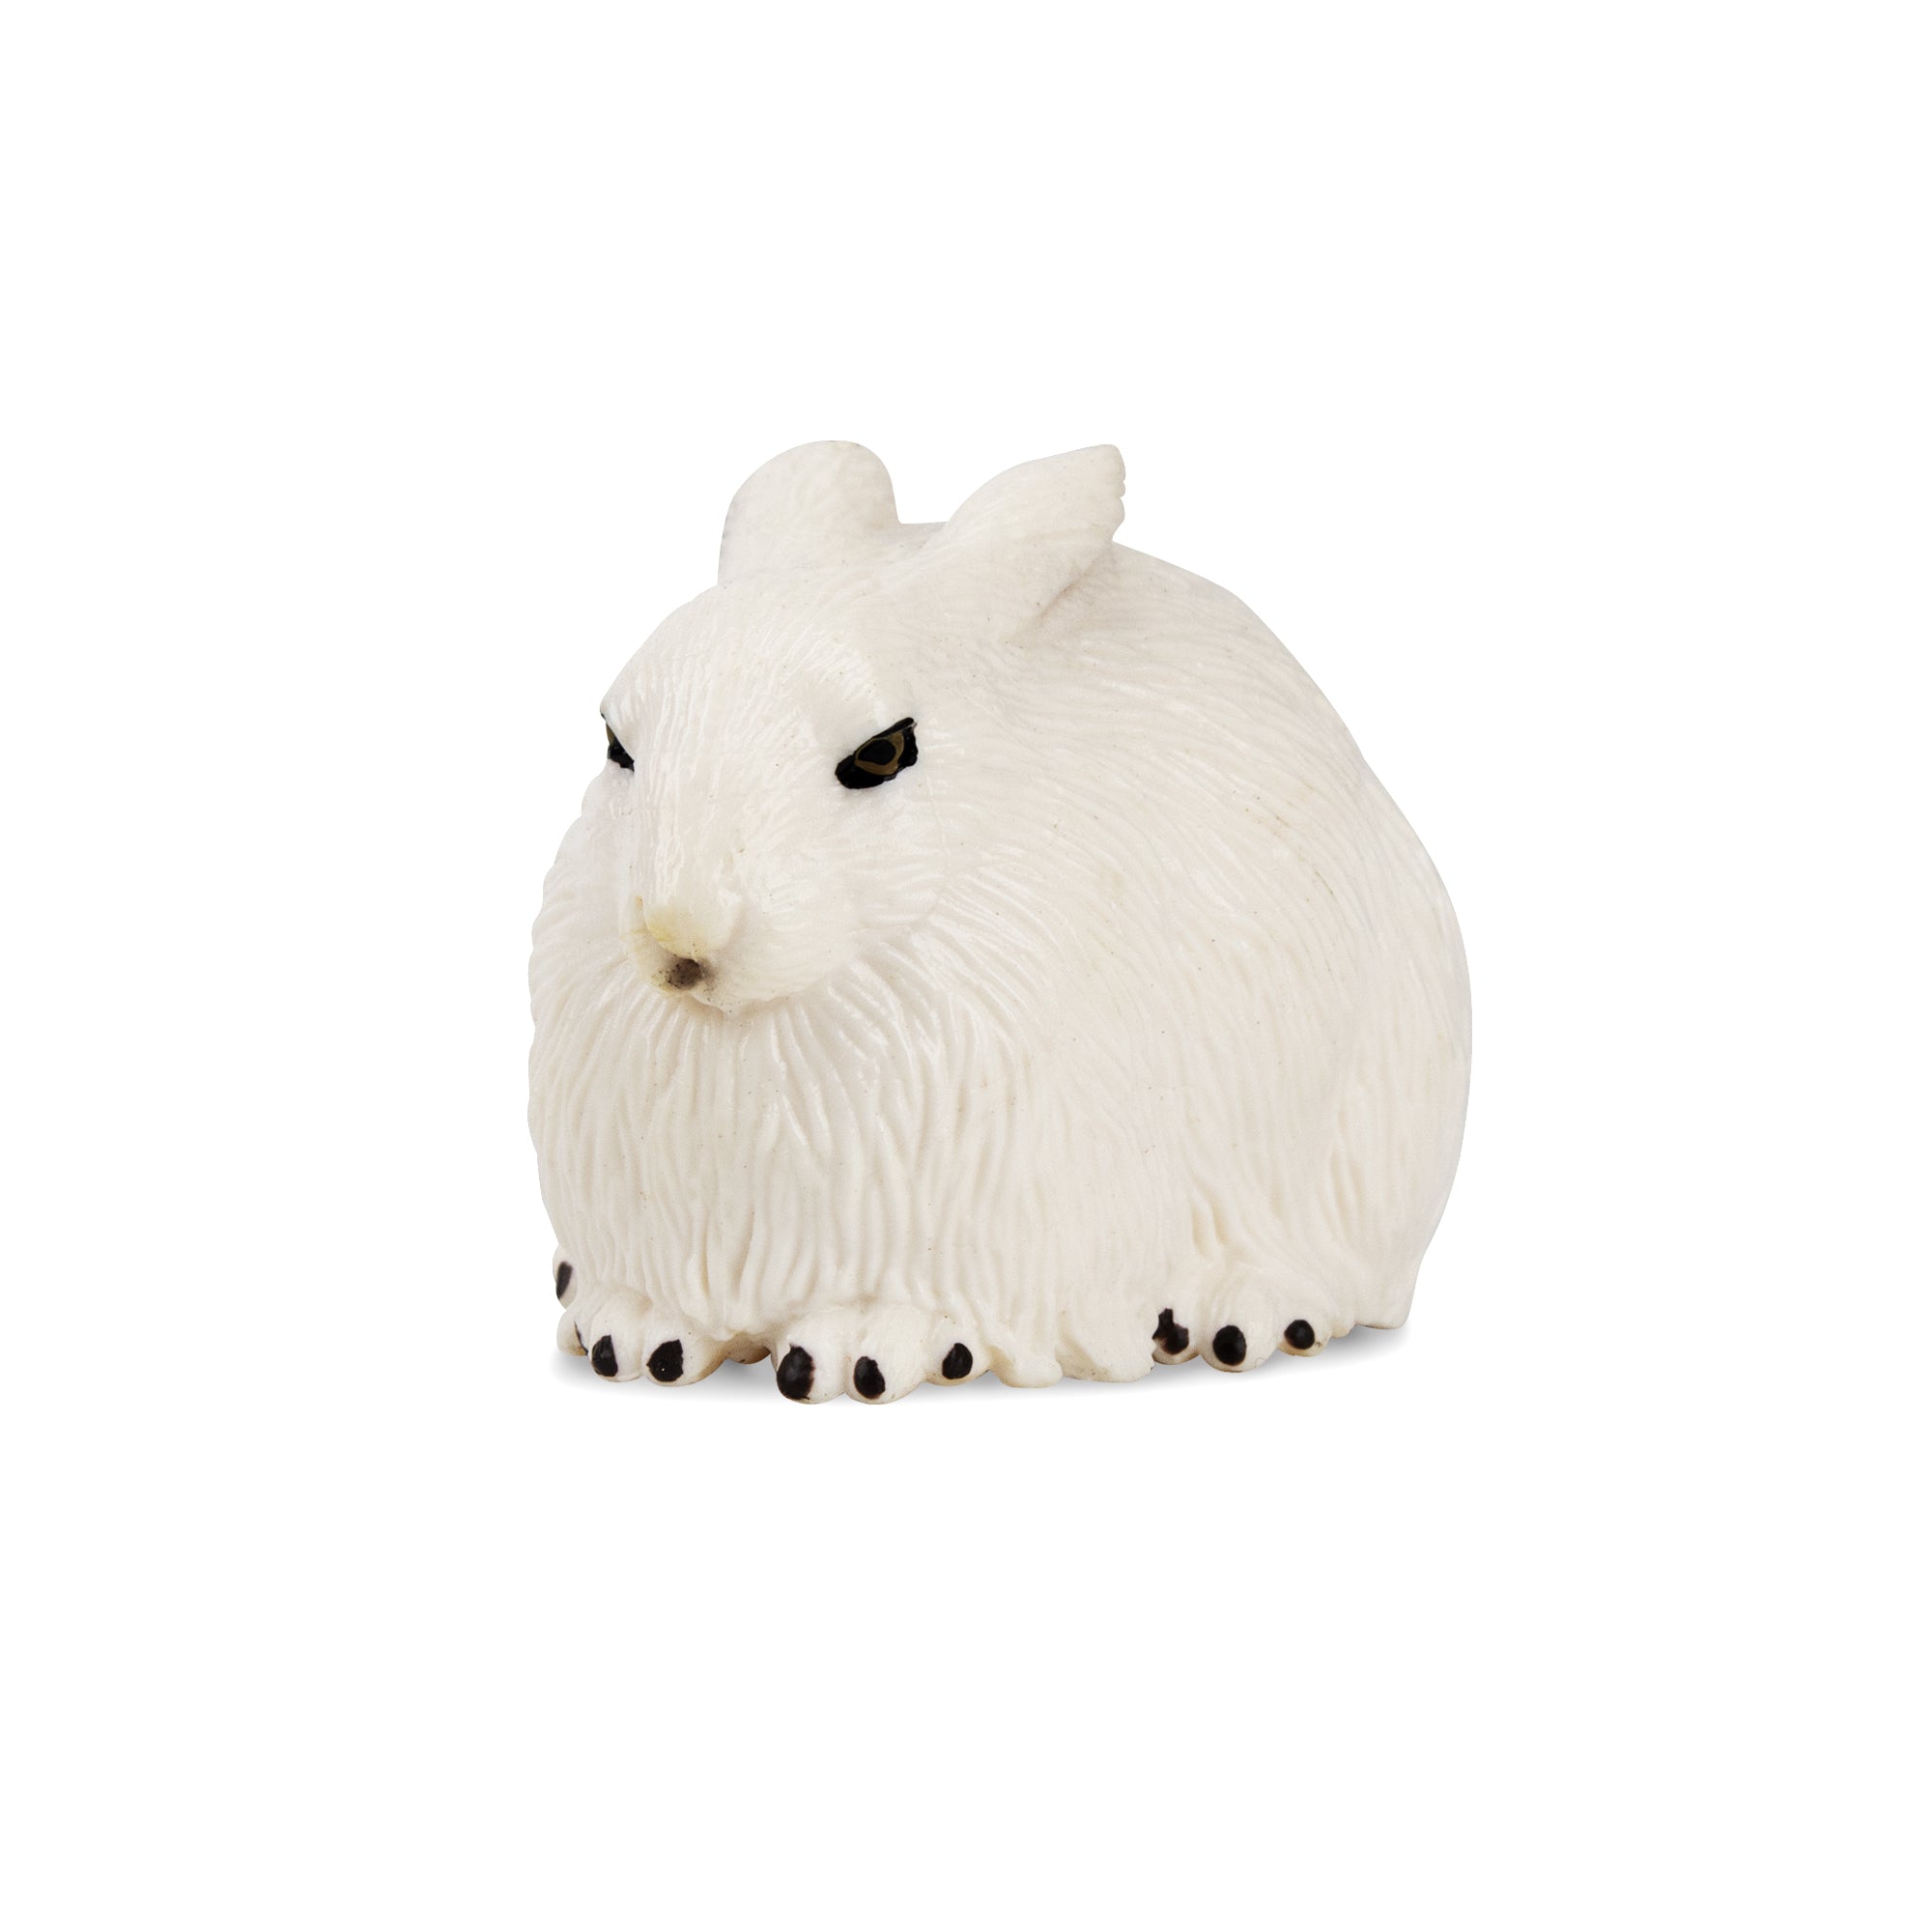 Arctic Hare Figurine Toy